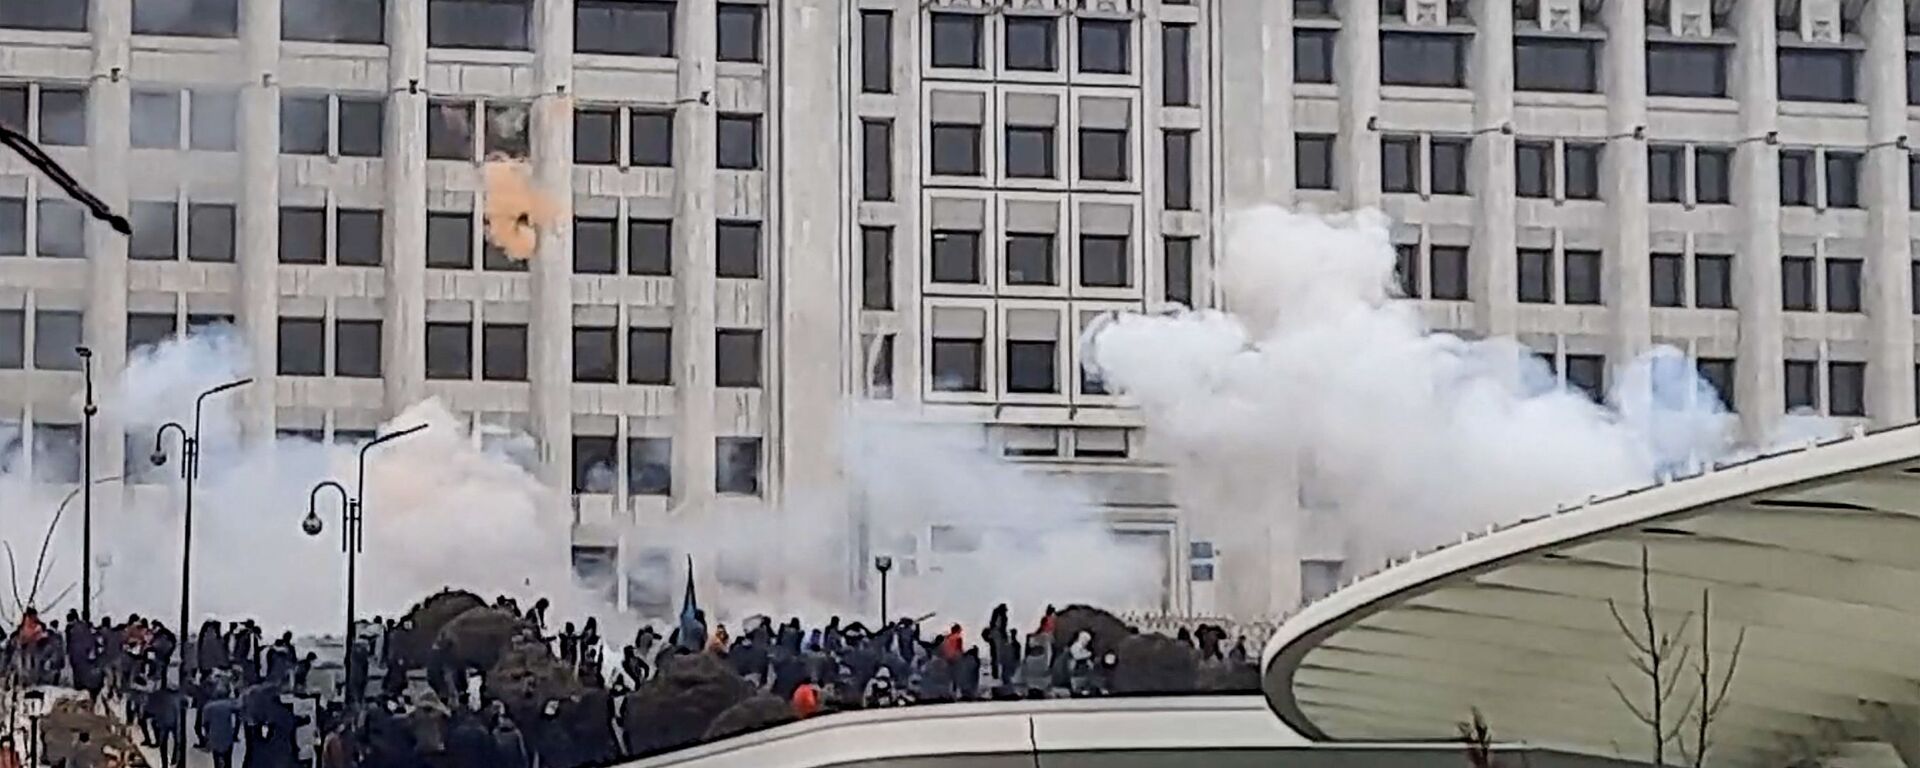 Протестующие возле административного здания во время митинга из-за повышения цен на энергоносители в Алматы - Sputnik Молдова, 1920, 06.01.2022